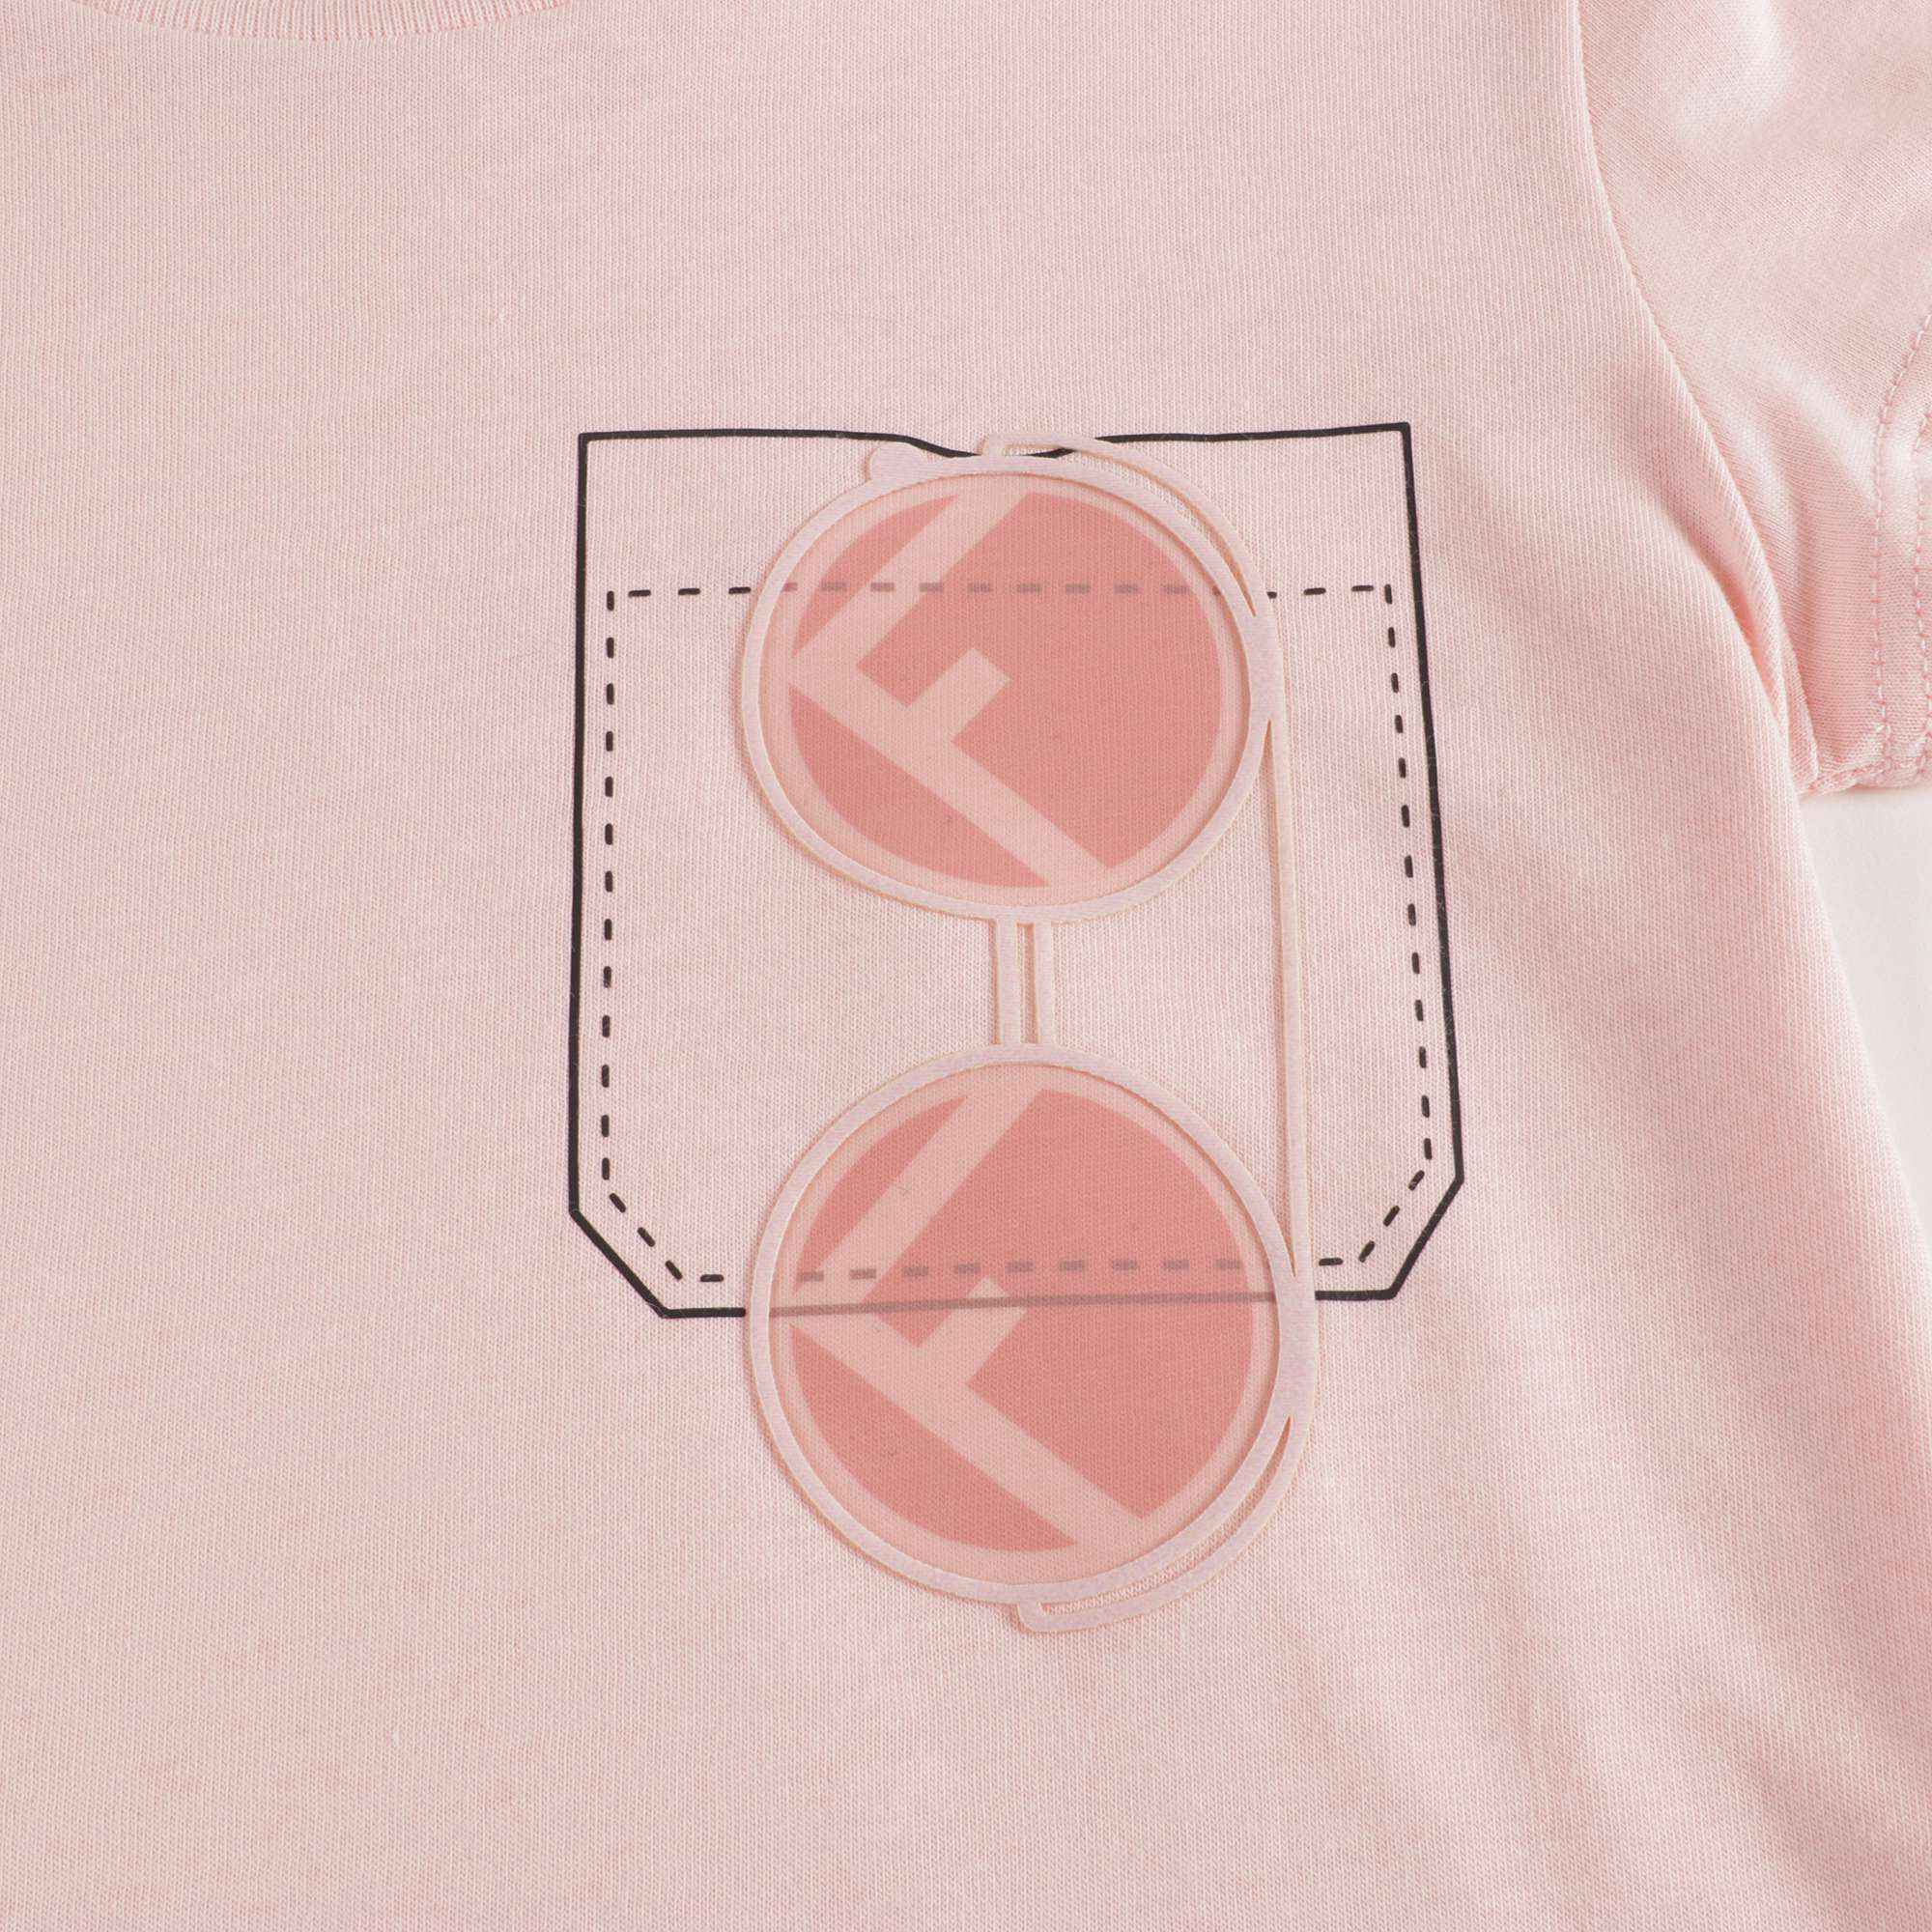 Girls Pink Printed Cotton T-shirt